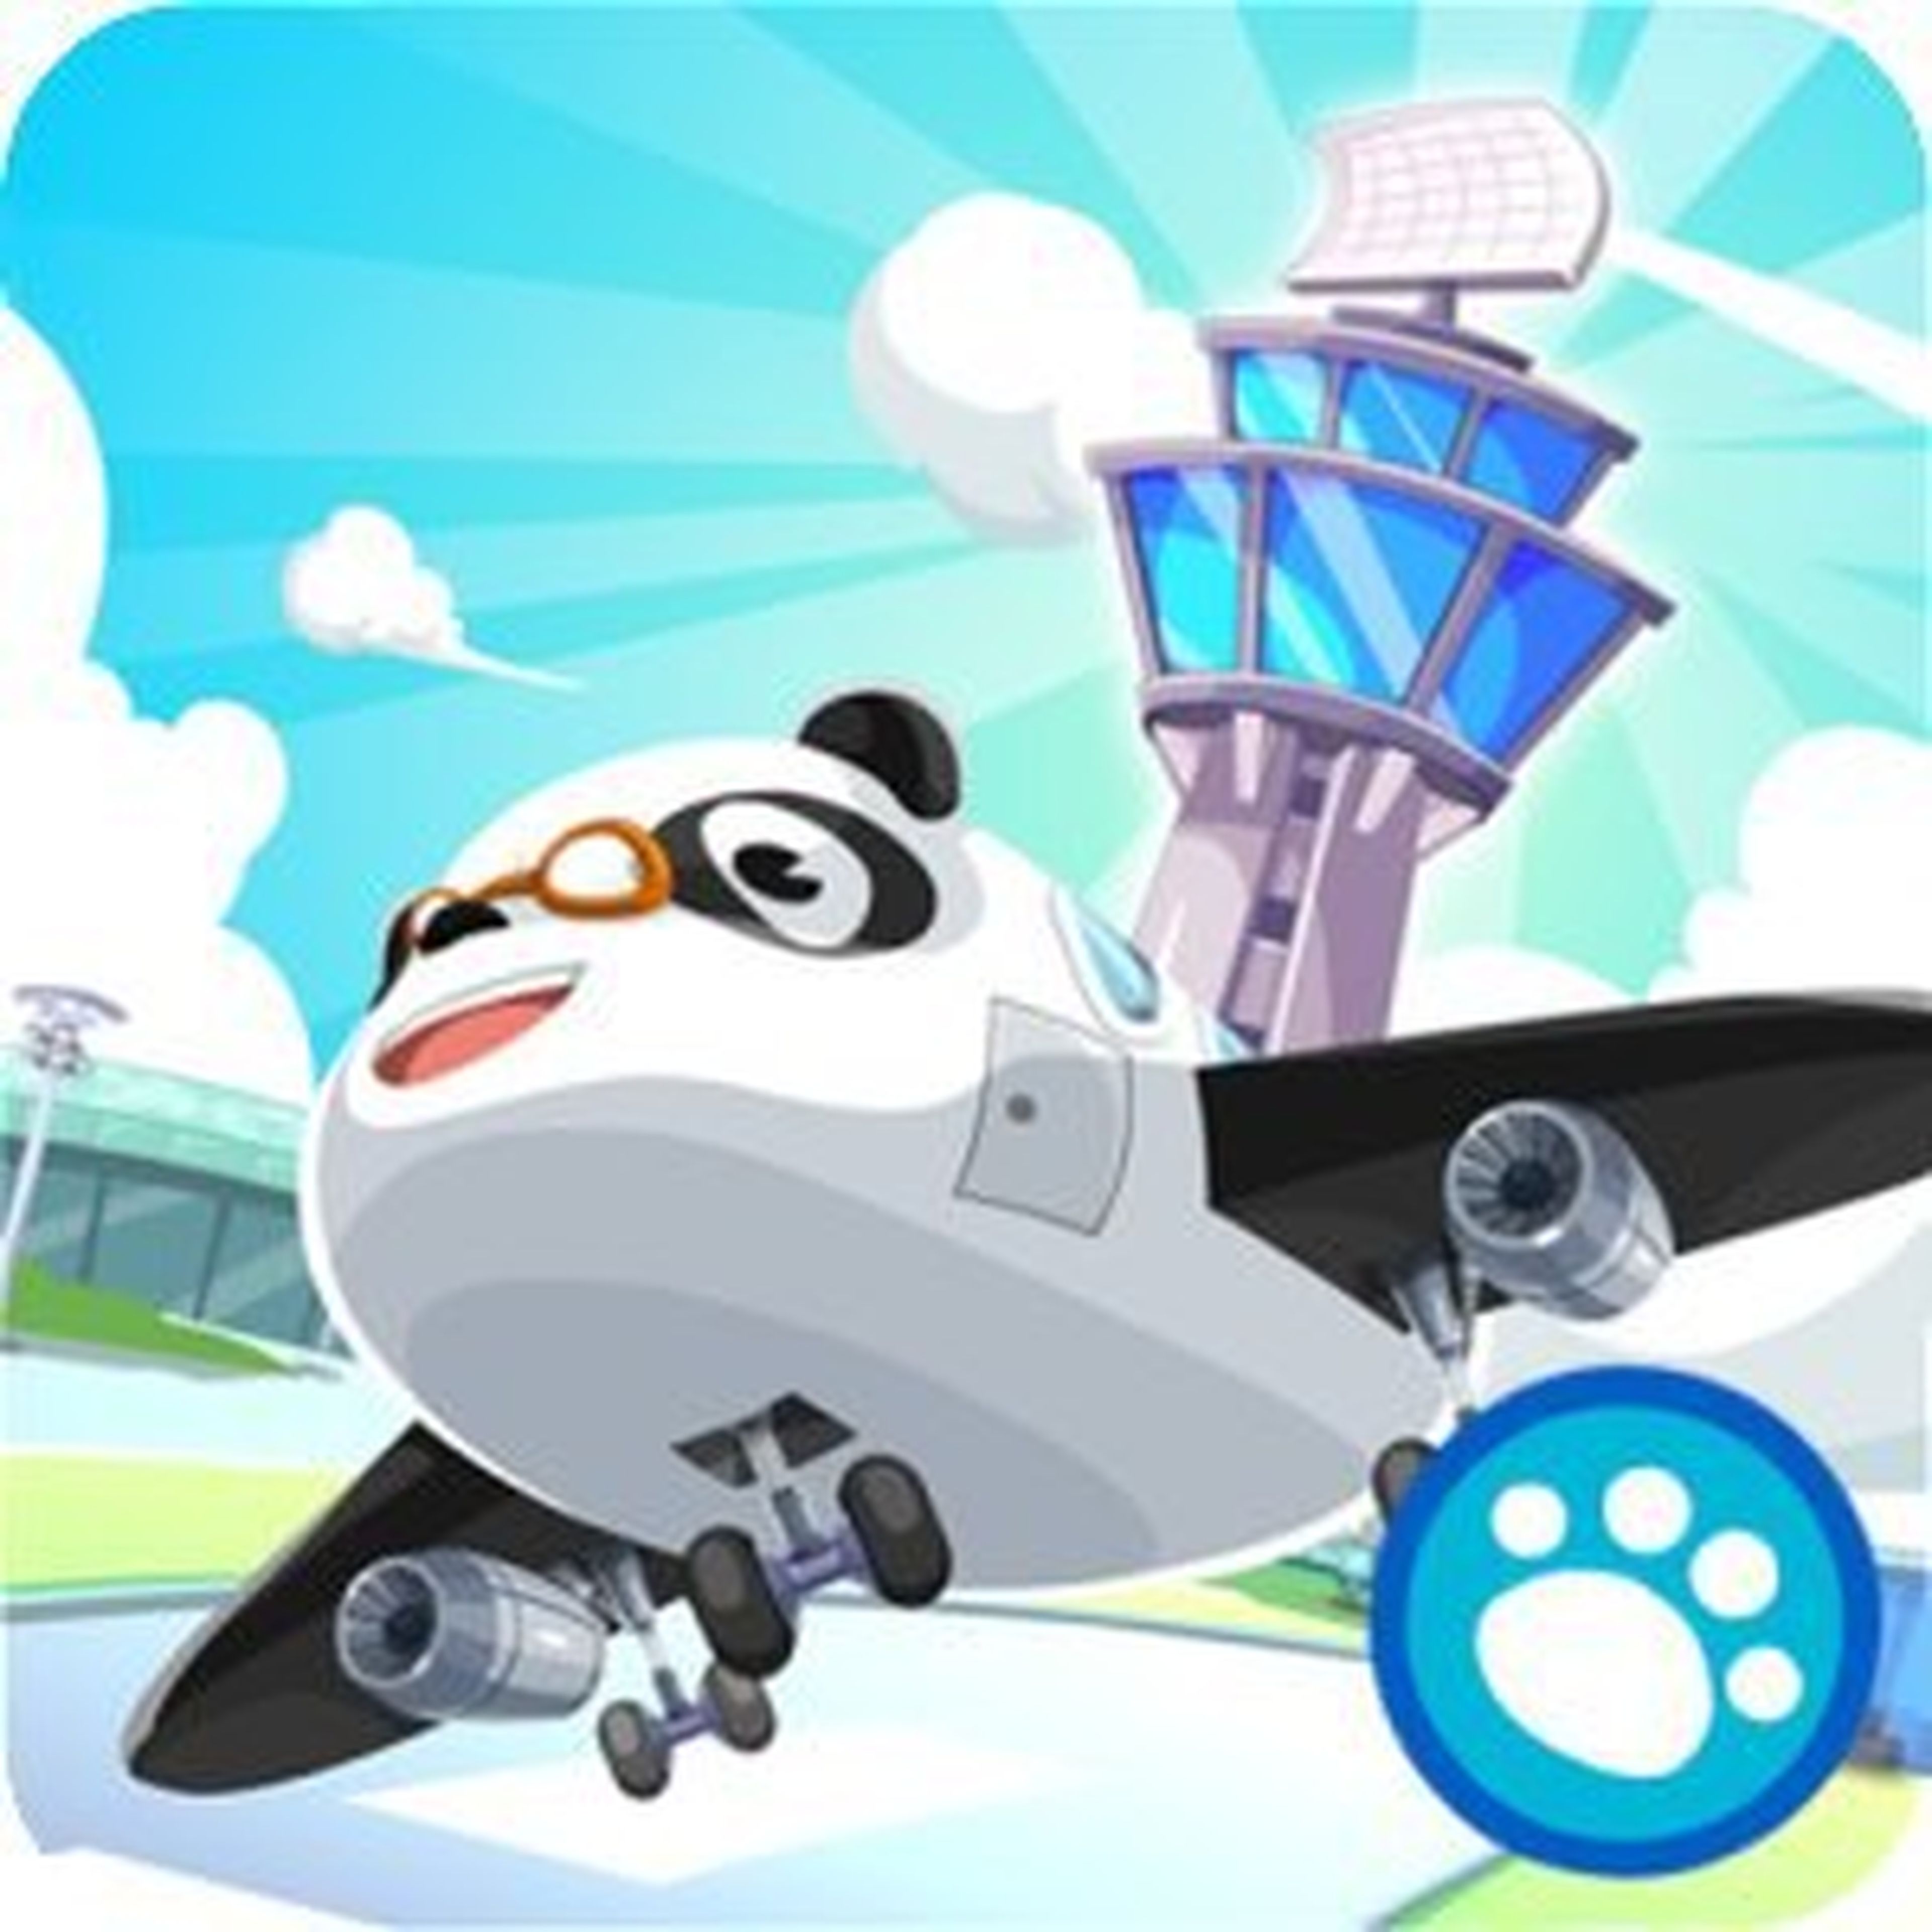 El Aeropuerto del Dr. Panda amazon